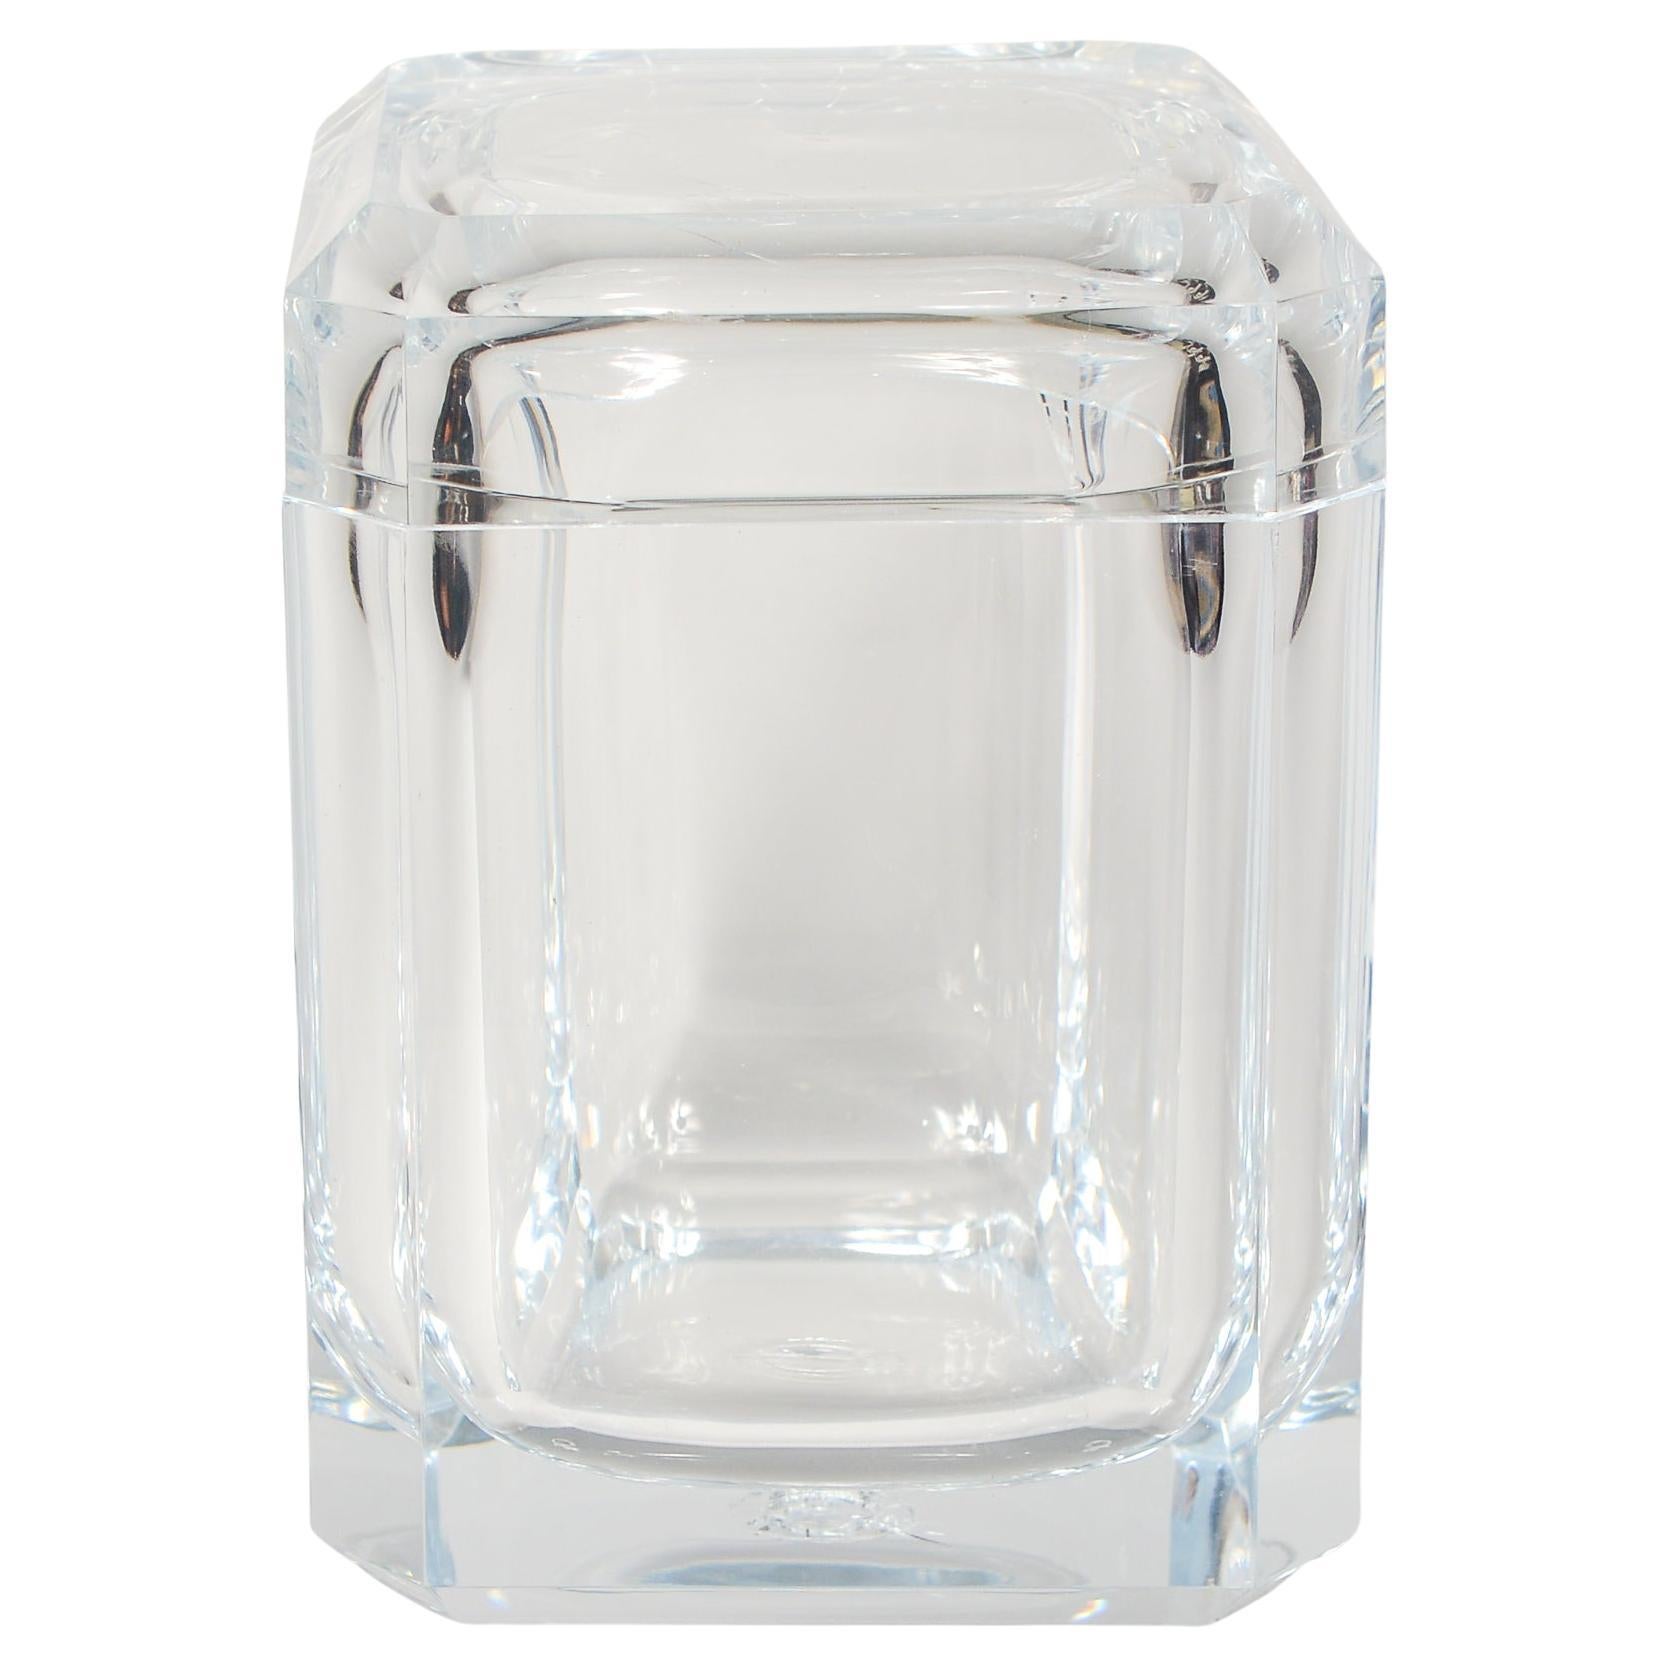 Grainware Carlisle Acrylic Swivel Top Ice Bucket